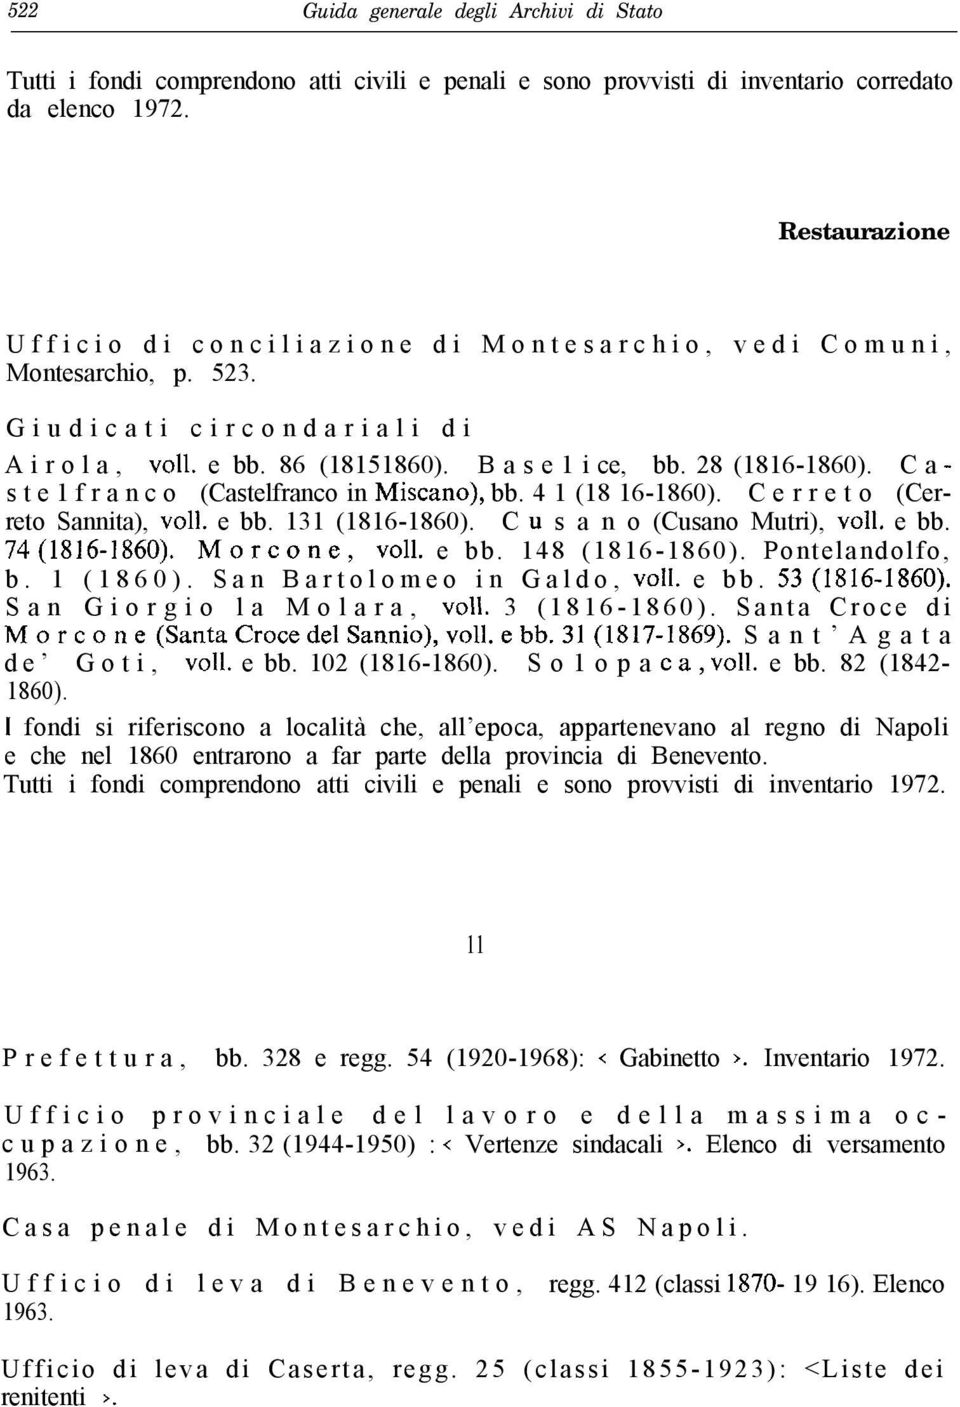 C a - s t e 1 f r a n c o (Castelfranco in Miscano), bb. 4 1 (18 16-1860). C e r r e t o (Cerreto Sannita), ~011. e bb. 131 (1816-1860). C u s a n o (Cusano Mutri), ~011. e bb. 74(1816-1860).